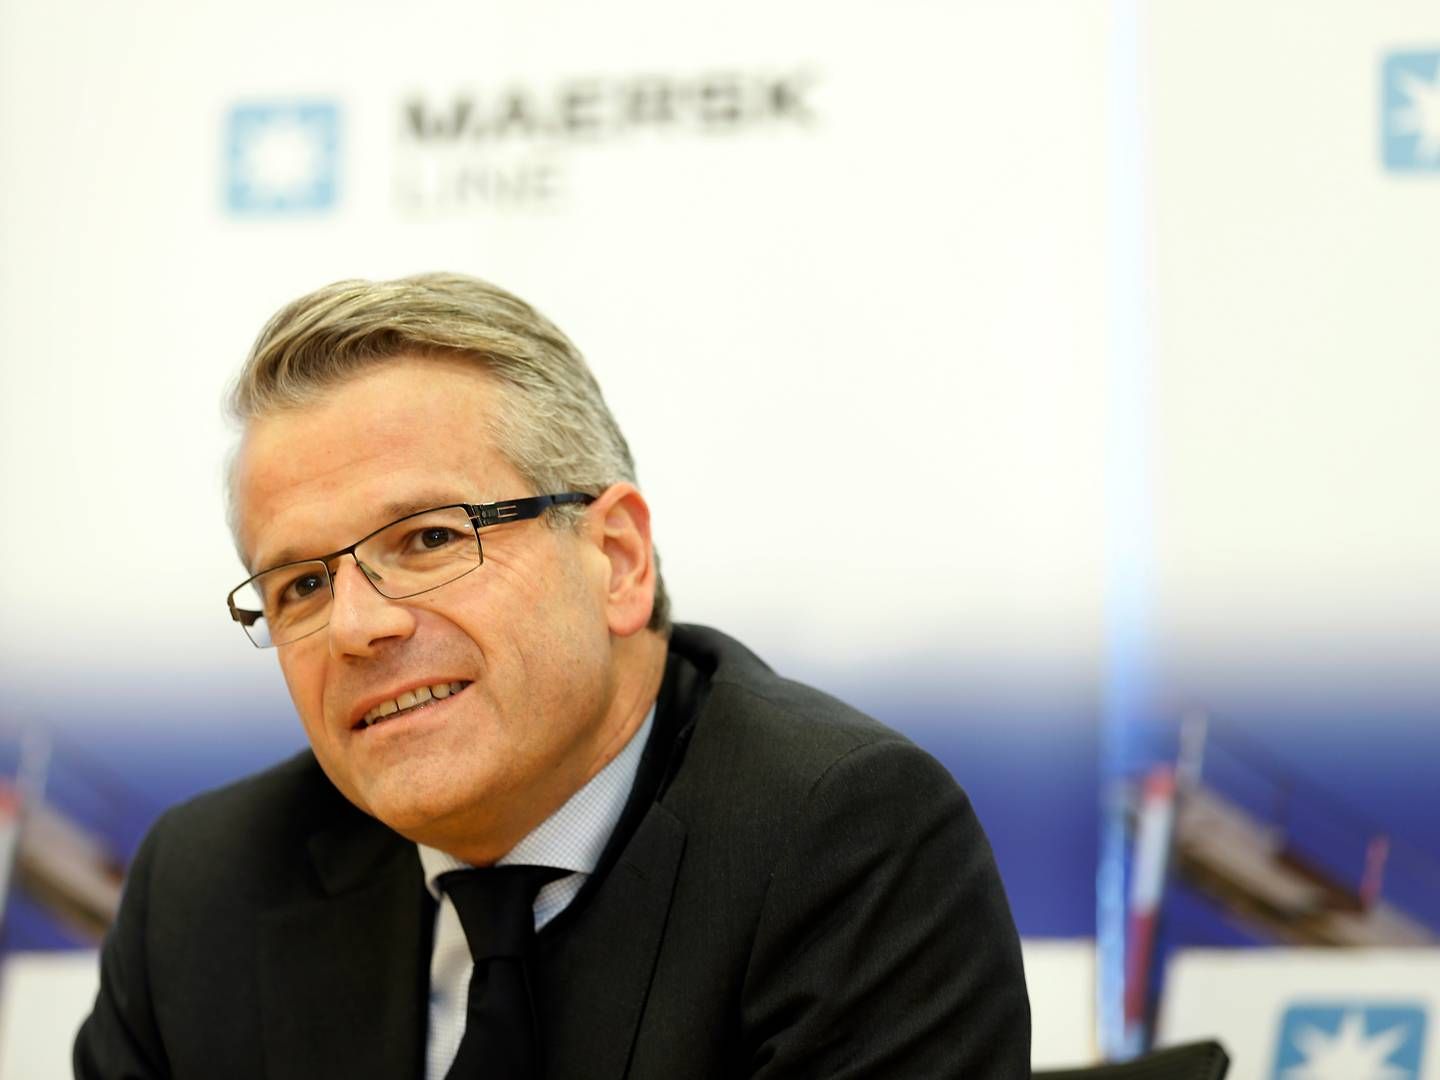 Vincent Clerc tog over som topchef i Maersk ved årsskiftet, hvor Søren Skou takkede efter lidt mere end seks år på posten. | Photo: Yen Meng Jiin/AP/Ritzau Scanpix